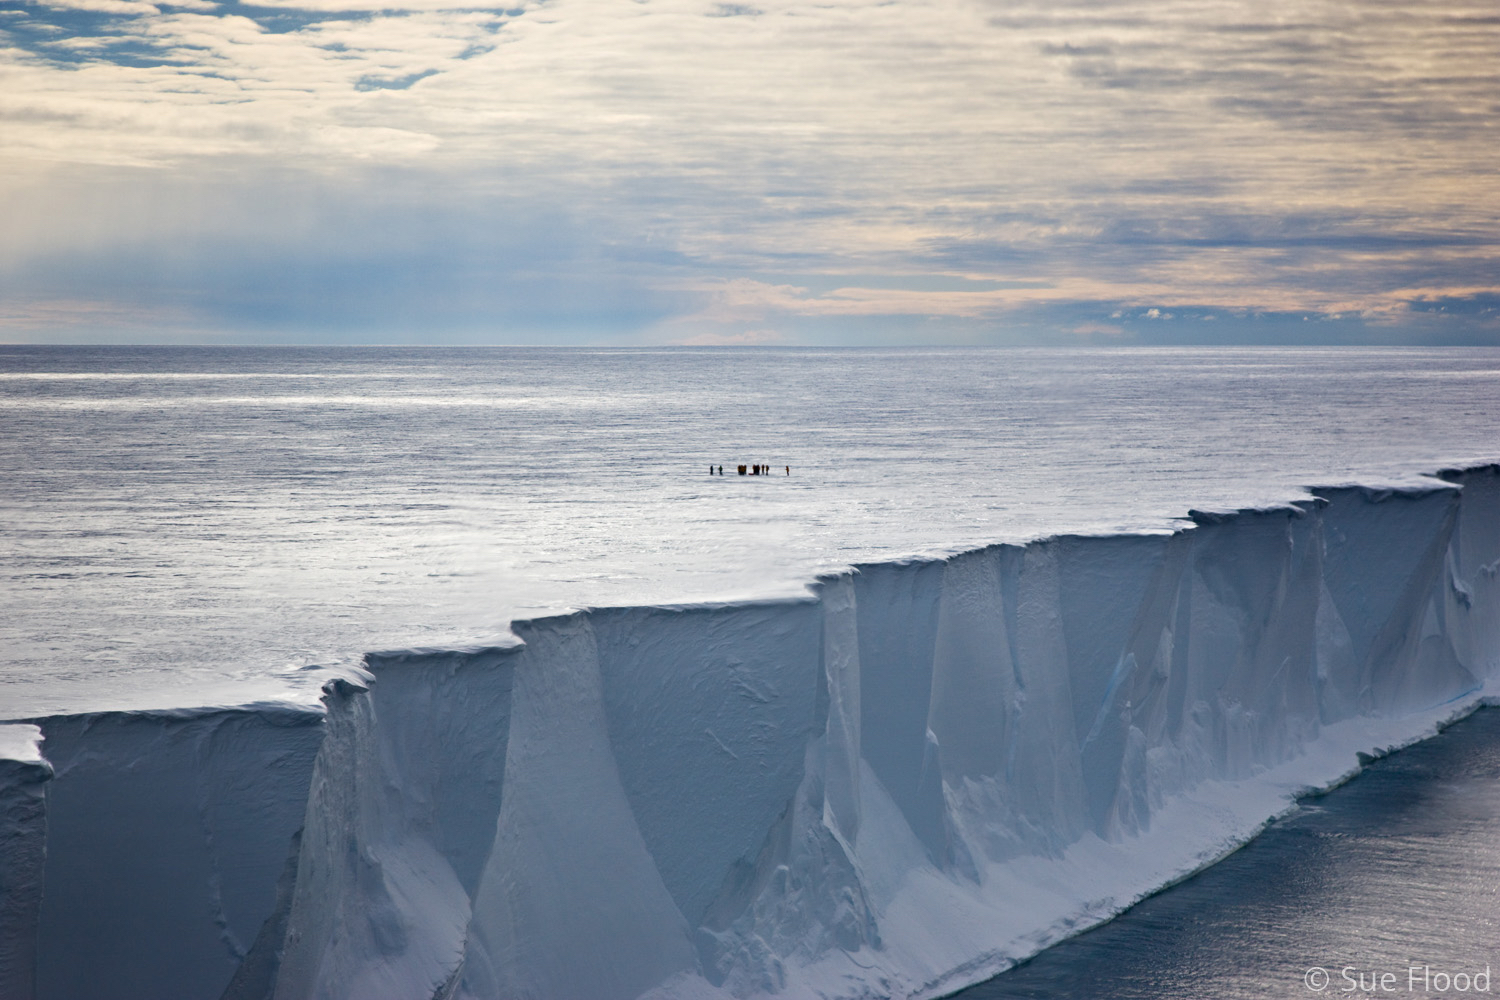 Ross Ice shelf, Antarctica